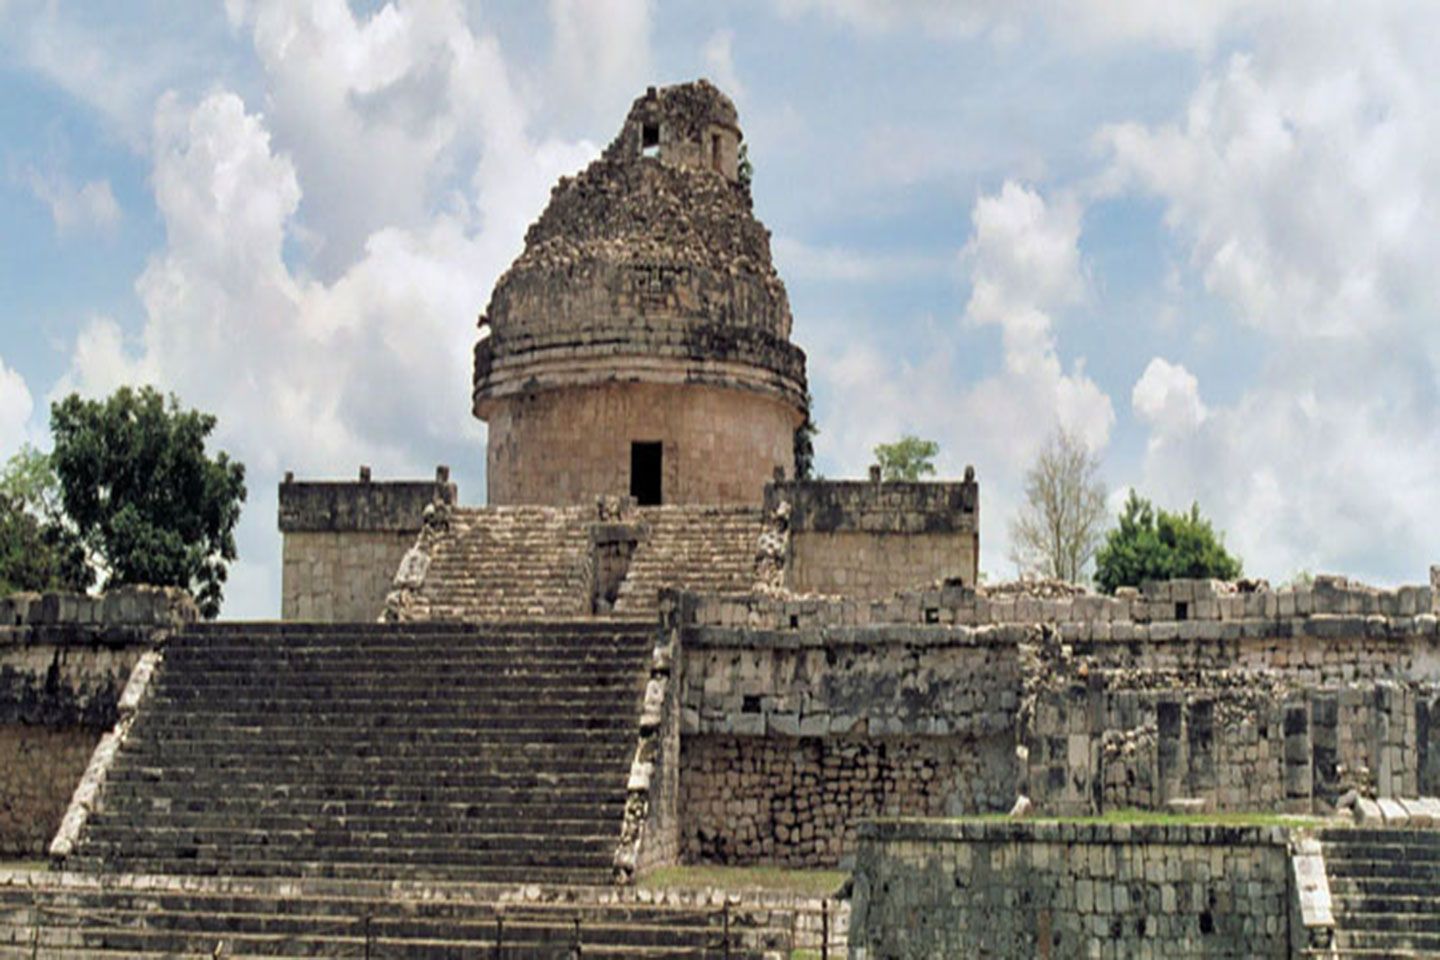 Arquitectura Maya